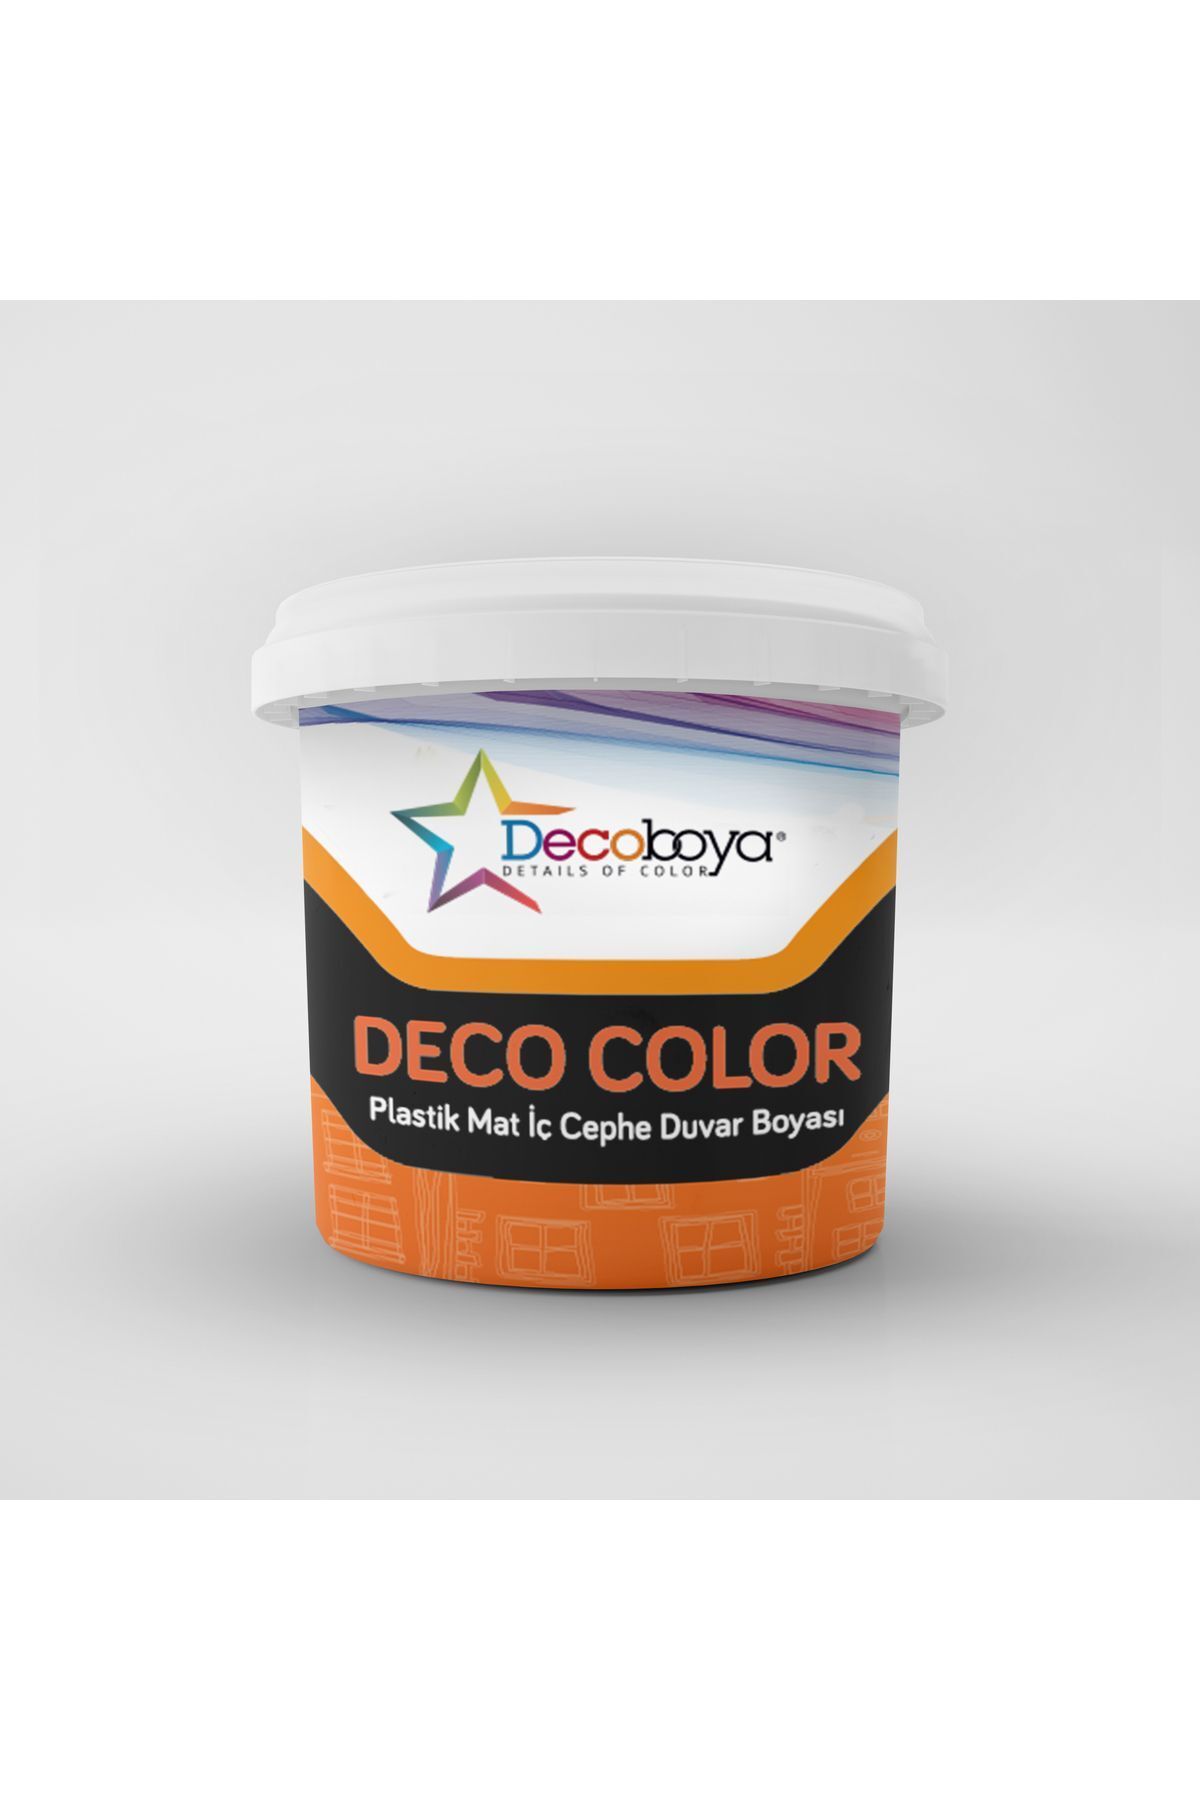 DecoBoya Plastik Mat Iç Cephe Duvar Boyası 3 Kg Tüm Renkler